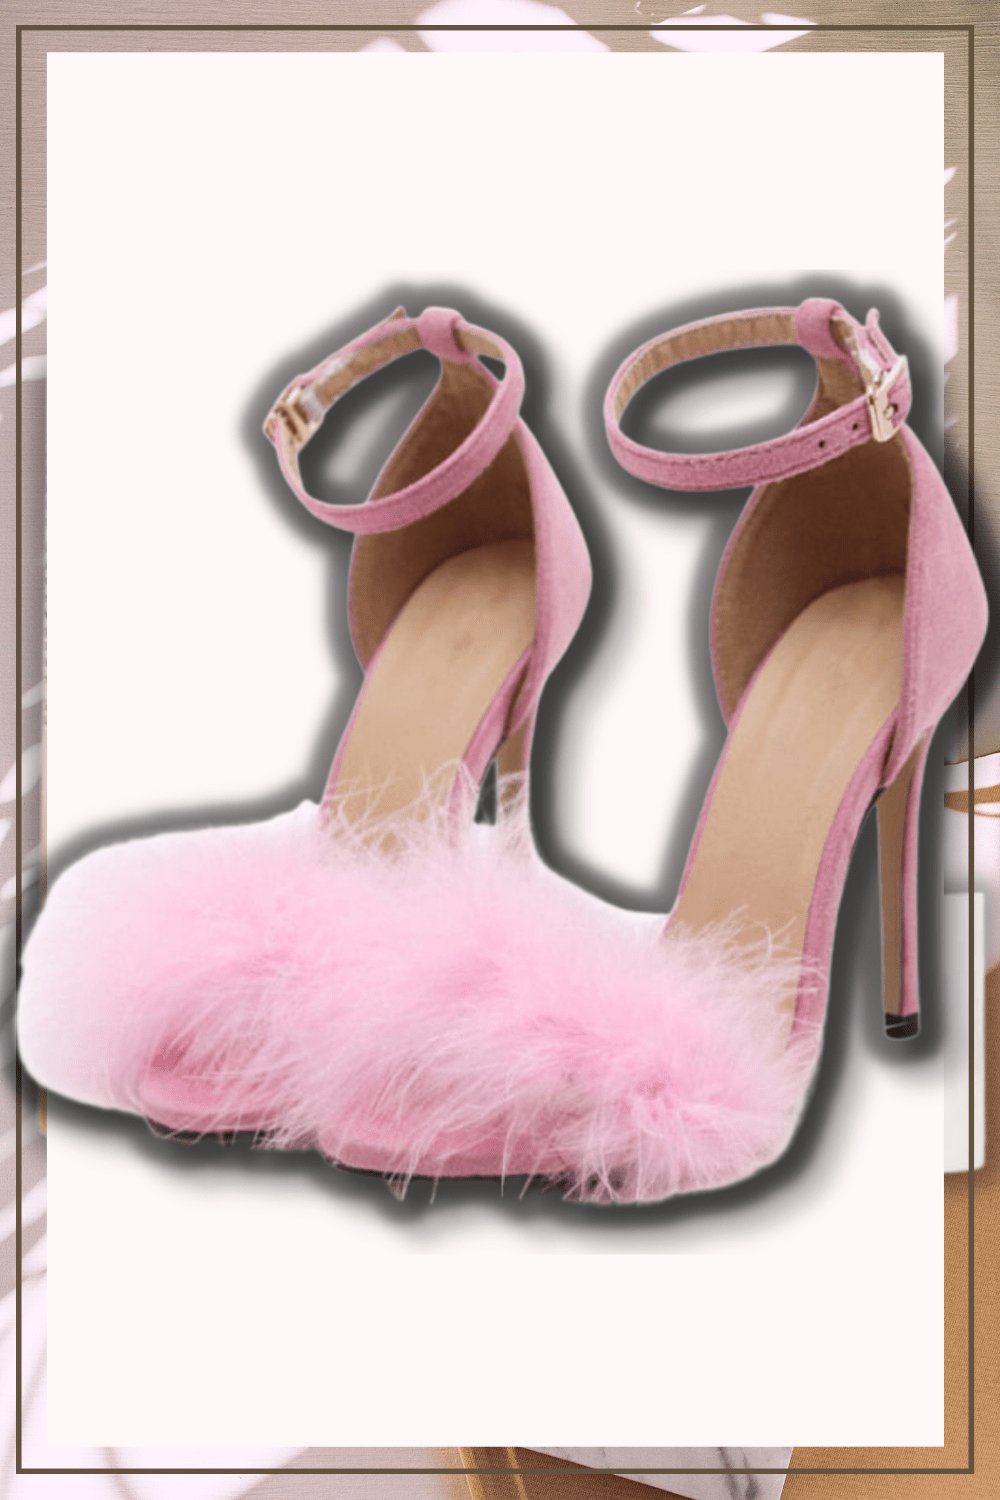 Black Stiletto High Heel Sandals With Fluffy Fur - TGC Boutique - High Heel Sandals